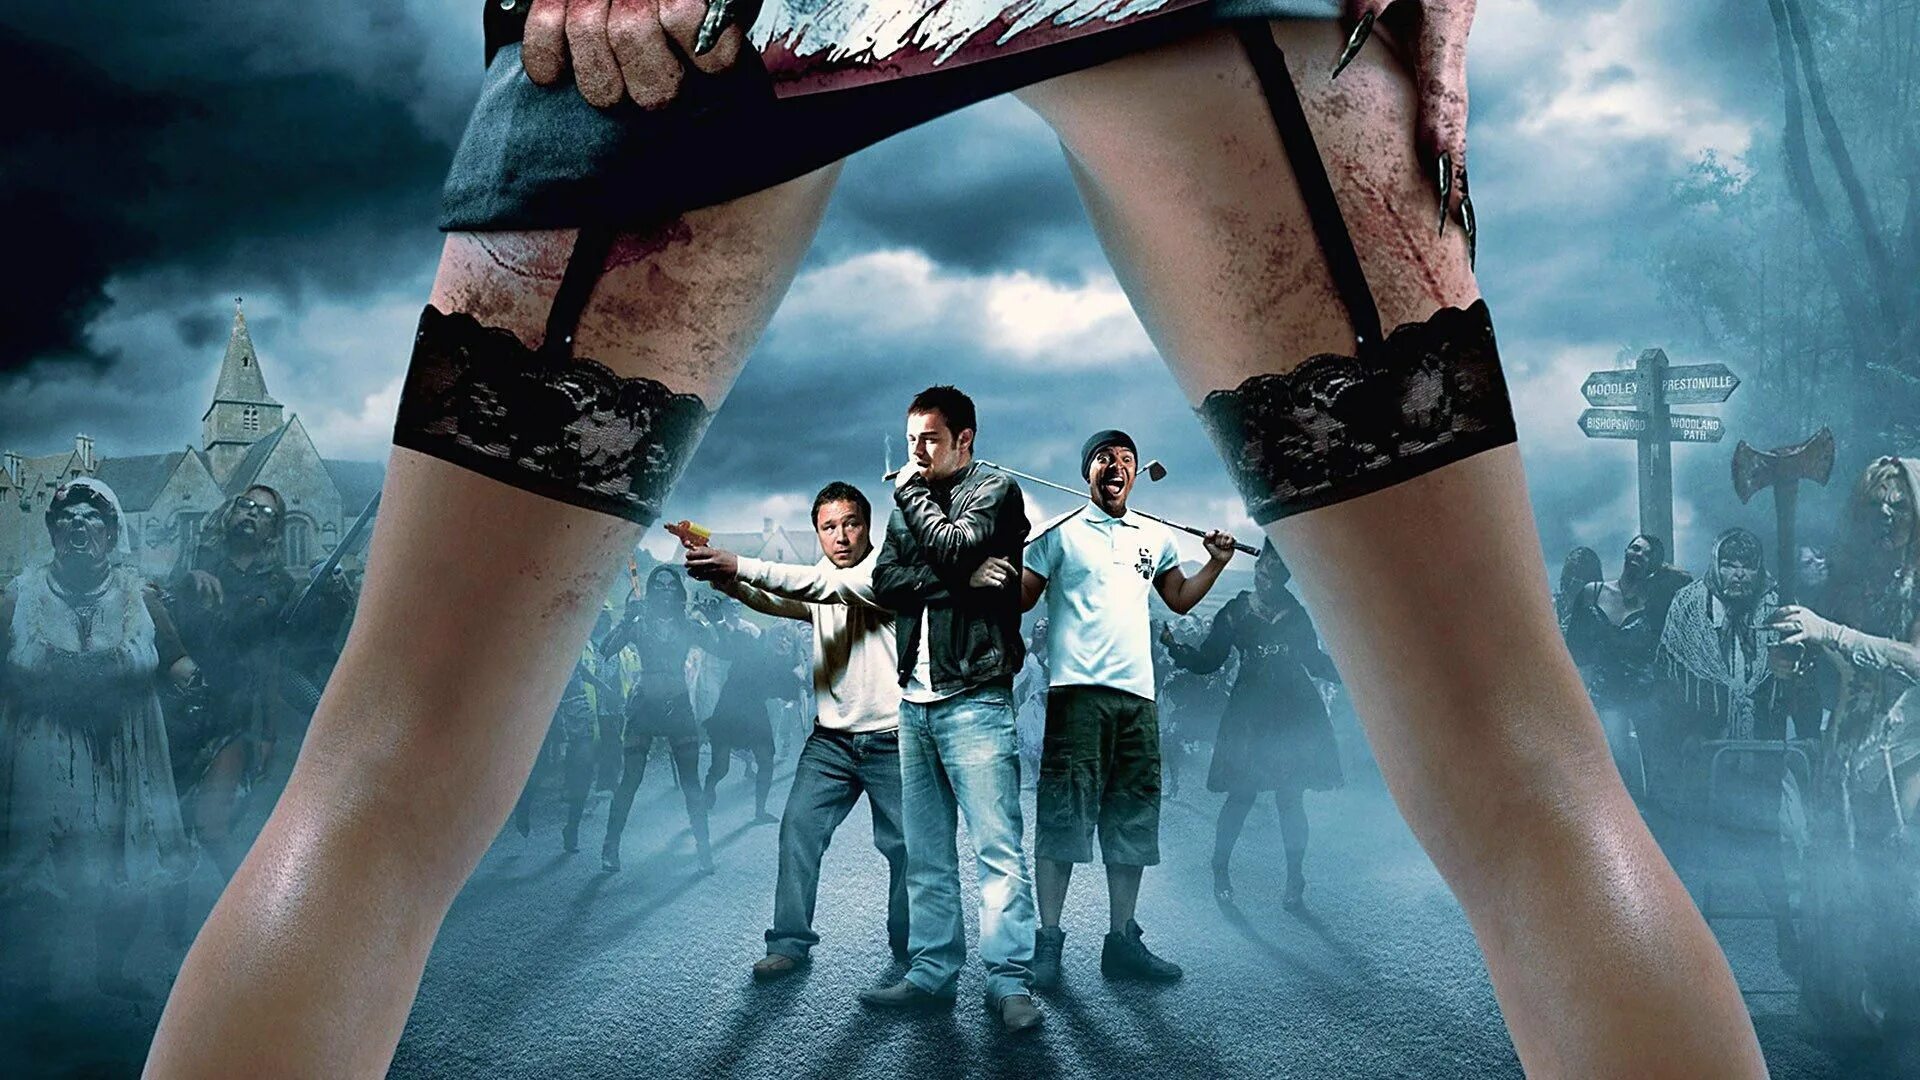 Приключение комедии фантастики ужасы. Попали! (Конура) -2009 Постер.